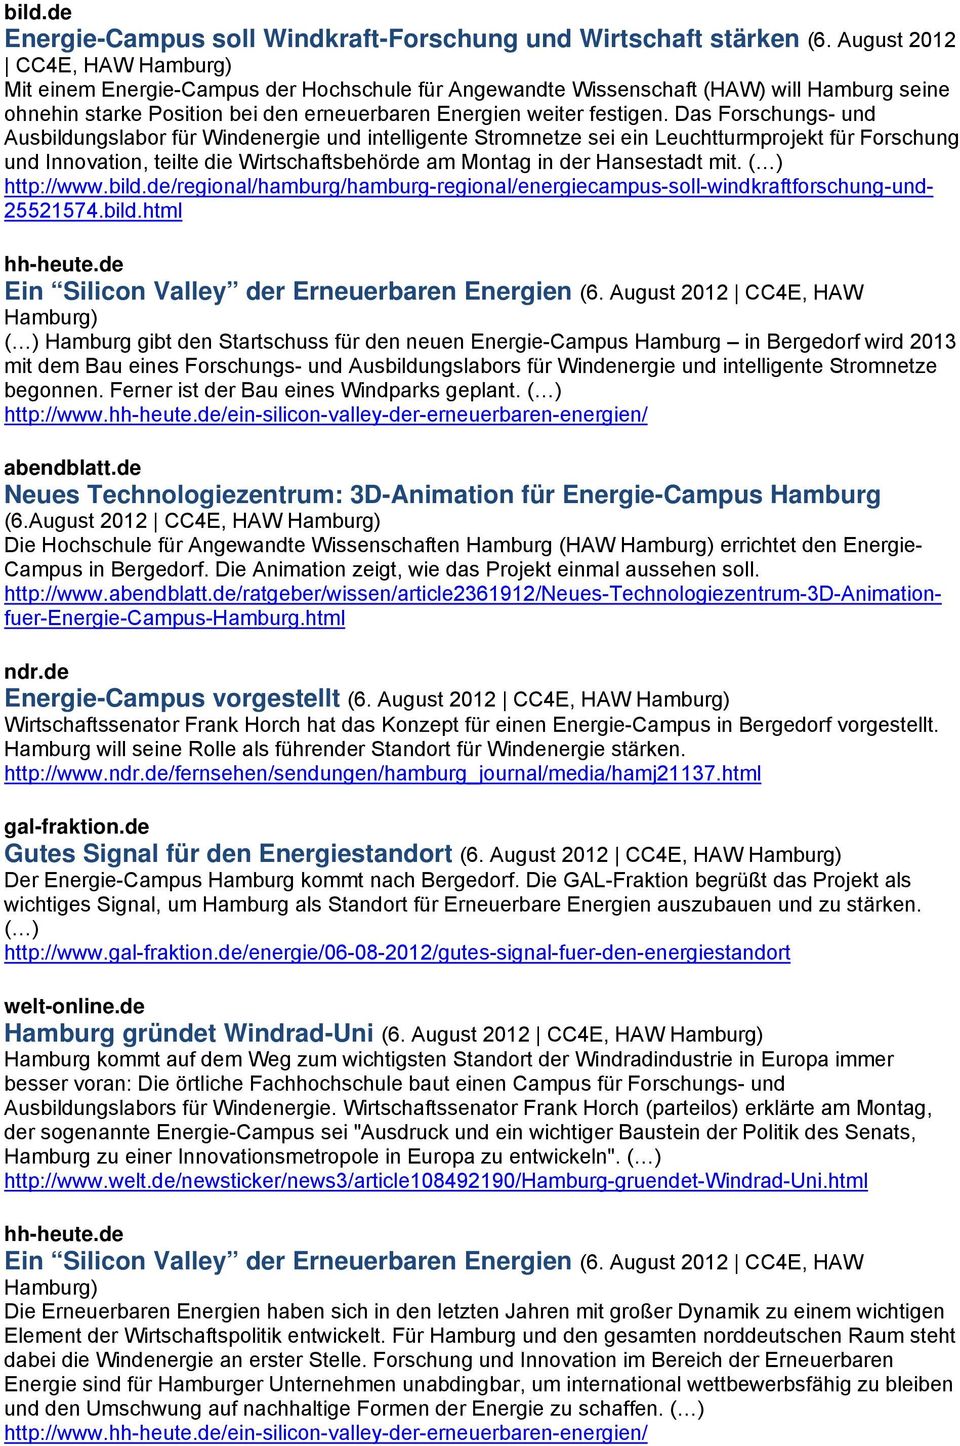 August 2012 CC4E, HAW Hamburg) ( ) Hamburg gibt den Startschuss für den neuen Energie-Campus Hamburg in Bergedorf wird 2013 mit dem Bau eines Forschungs- und Ausbildungslabors für Windenergie und